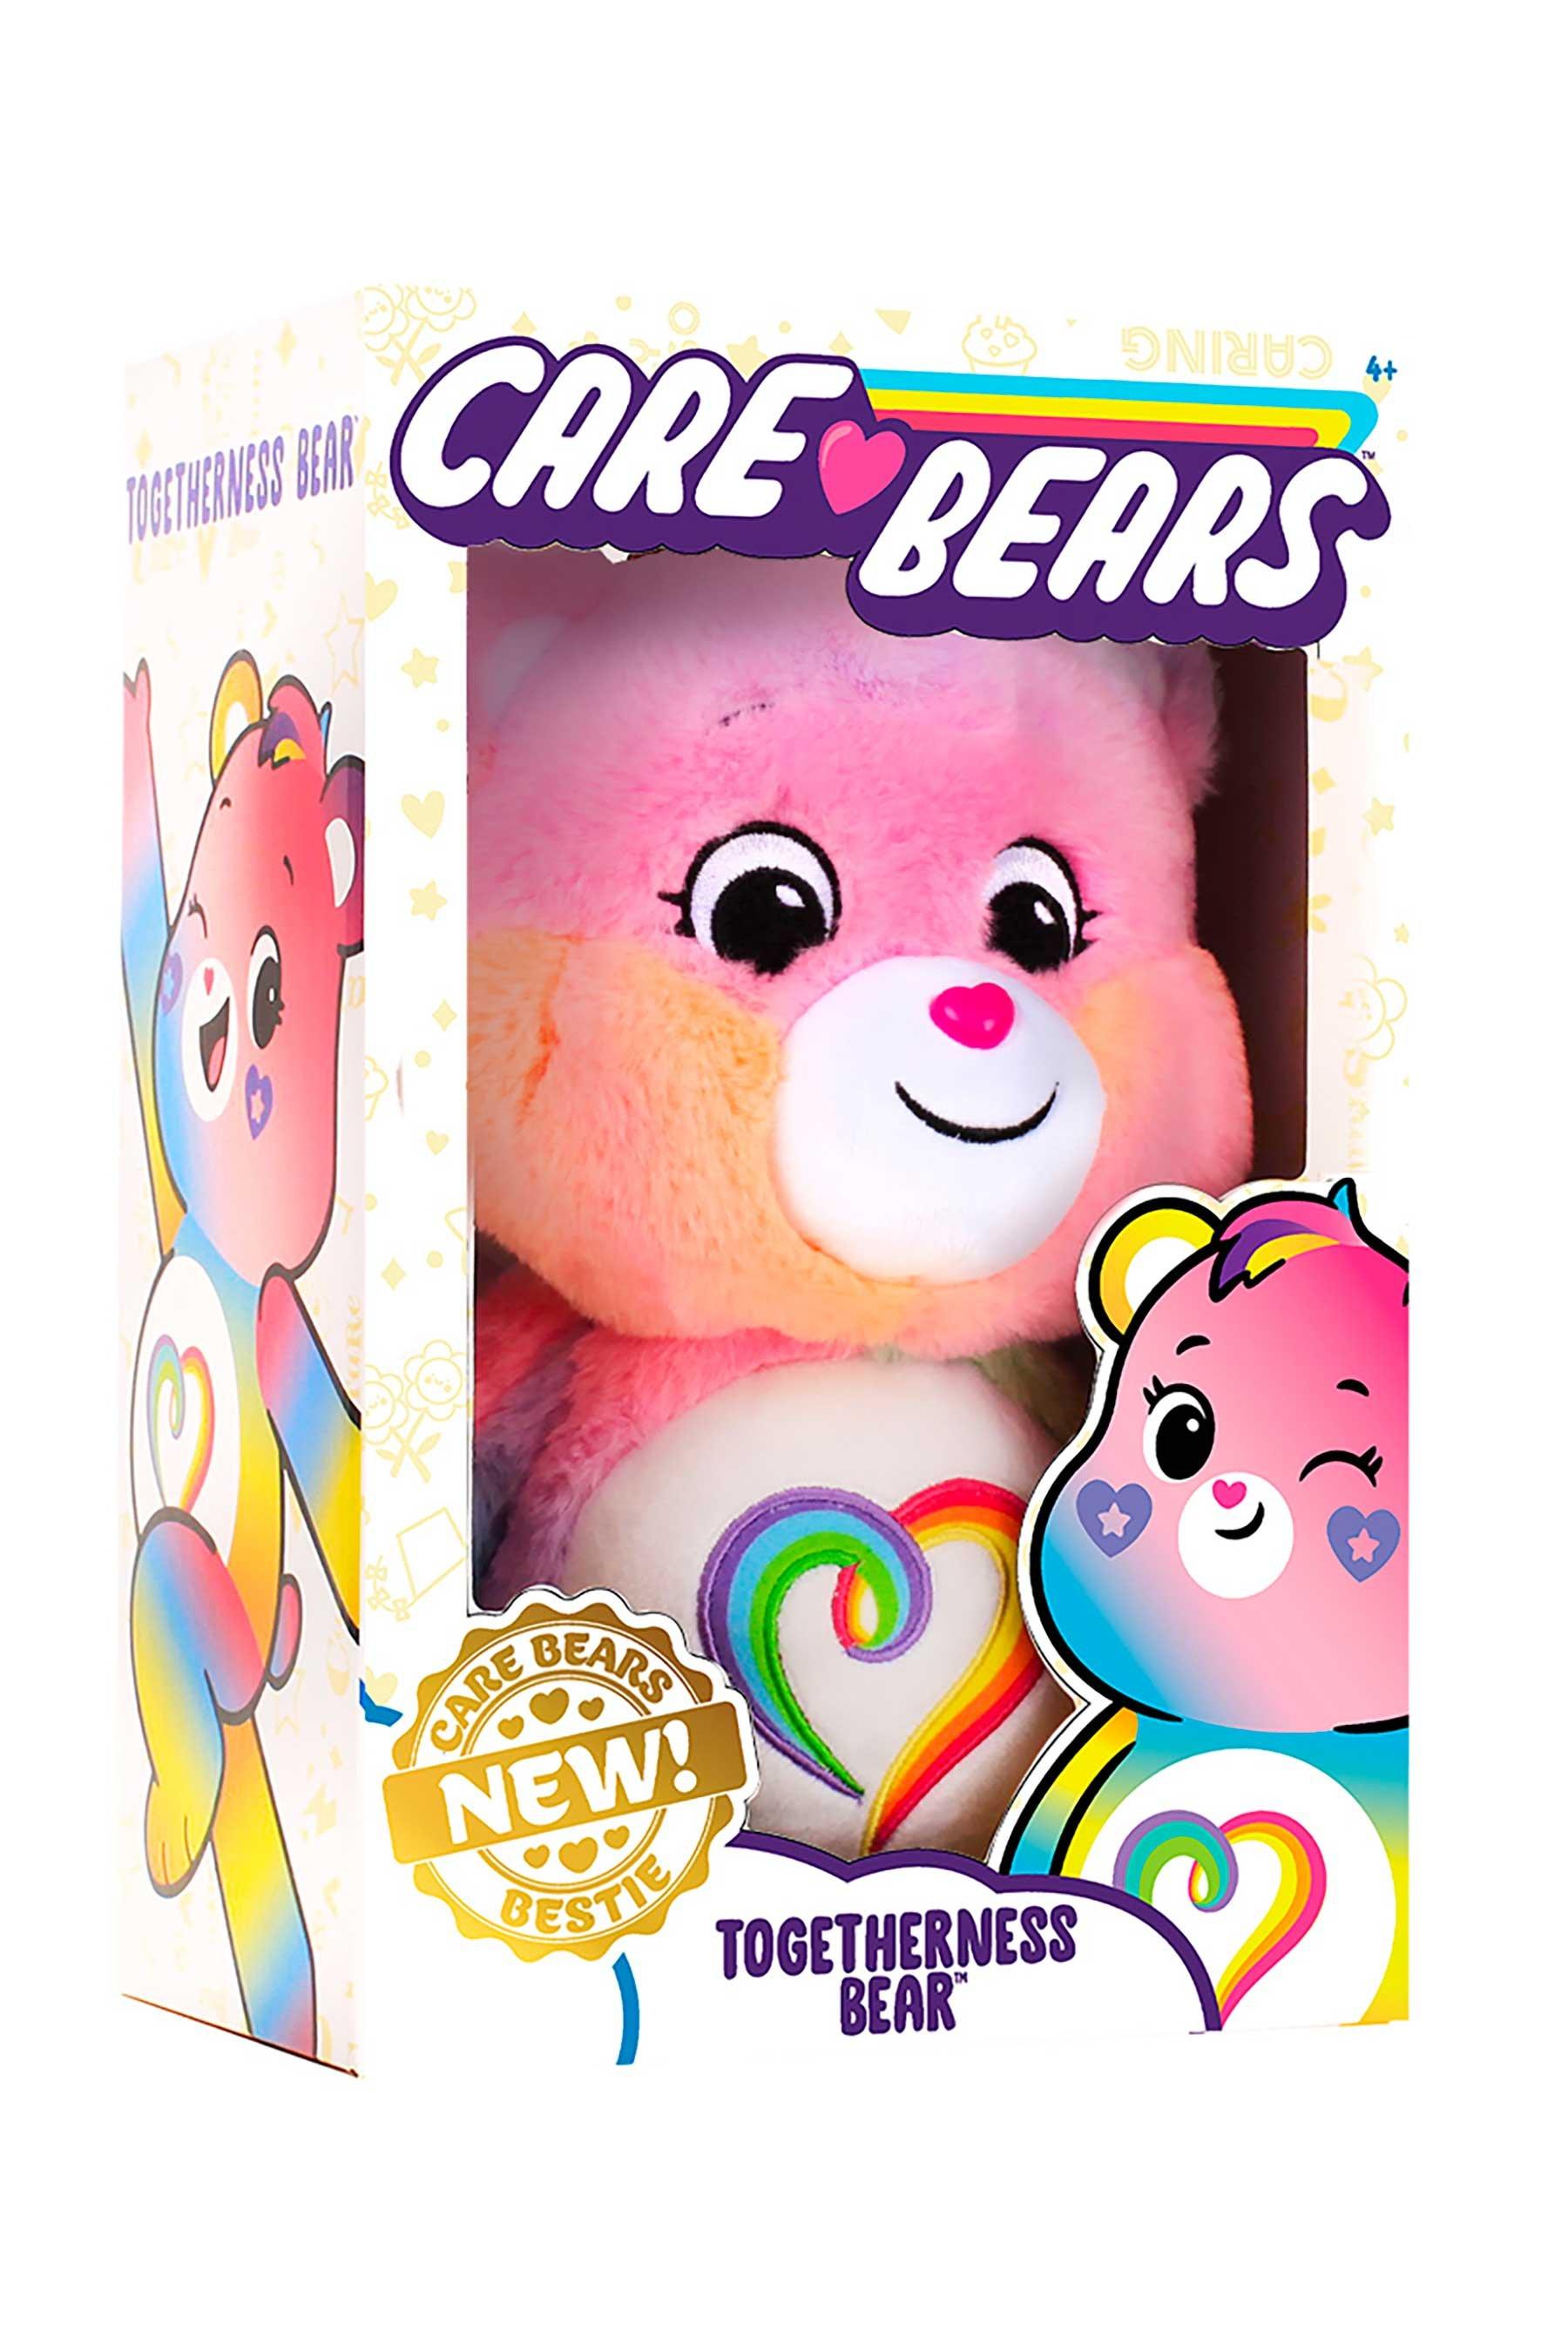 Care Bears Medium Cheer Bear Plush